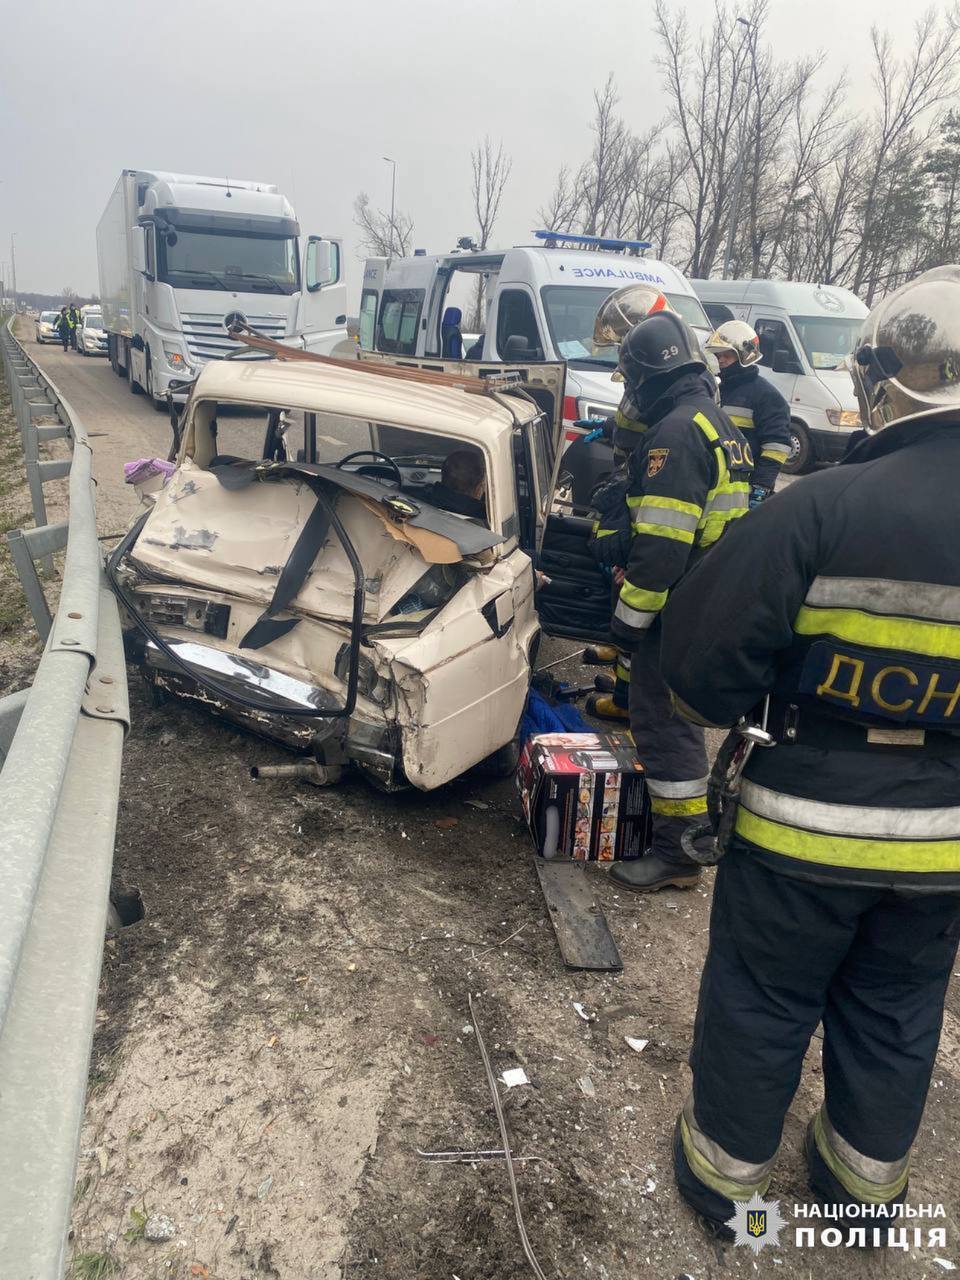 В Киевской области произошла авария с участием двух авто: есть погибший и пострадавшие. Фото и подробности